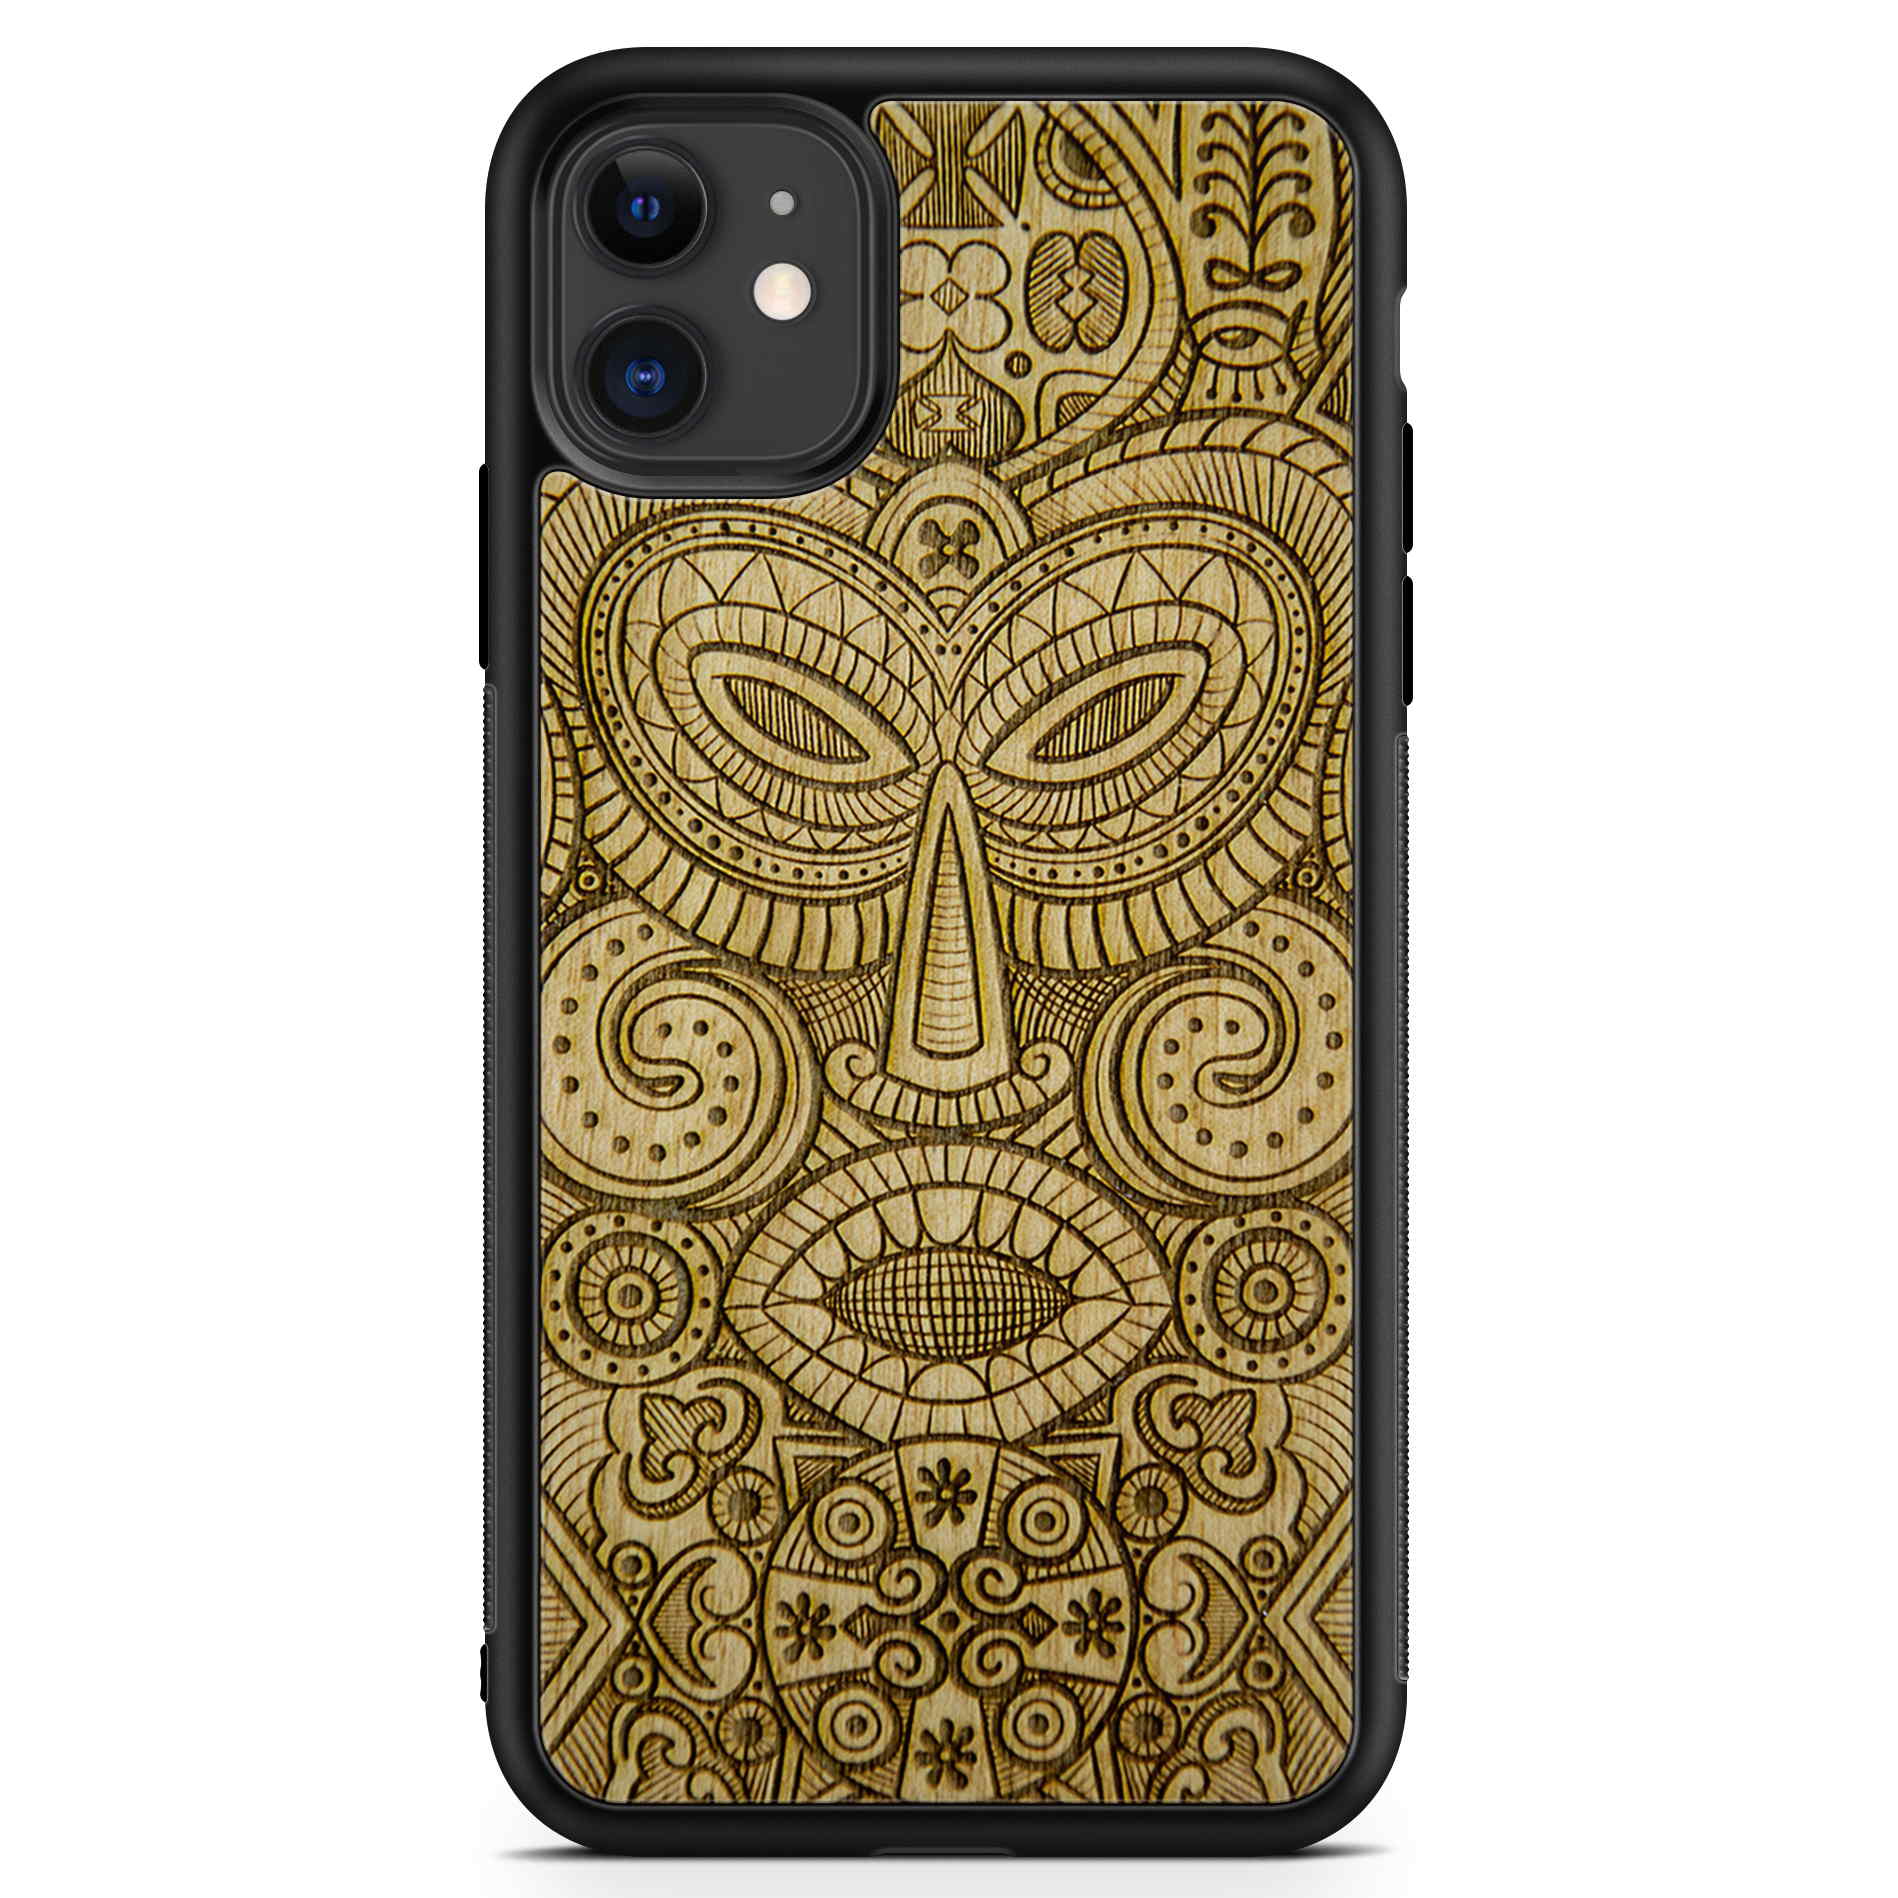 Custodia per telefono in legno con maschera tribale per iPhone 11